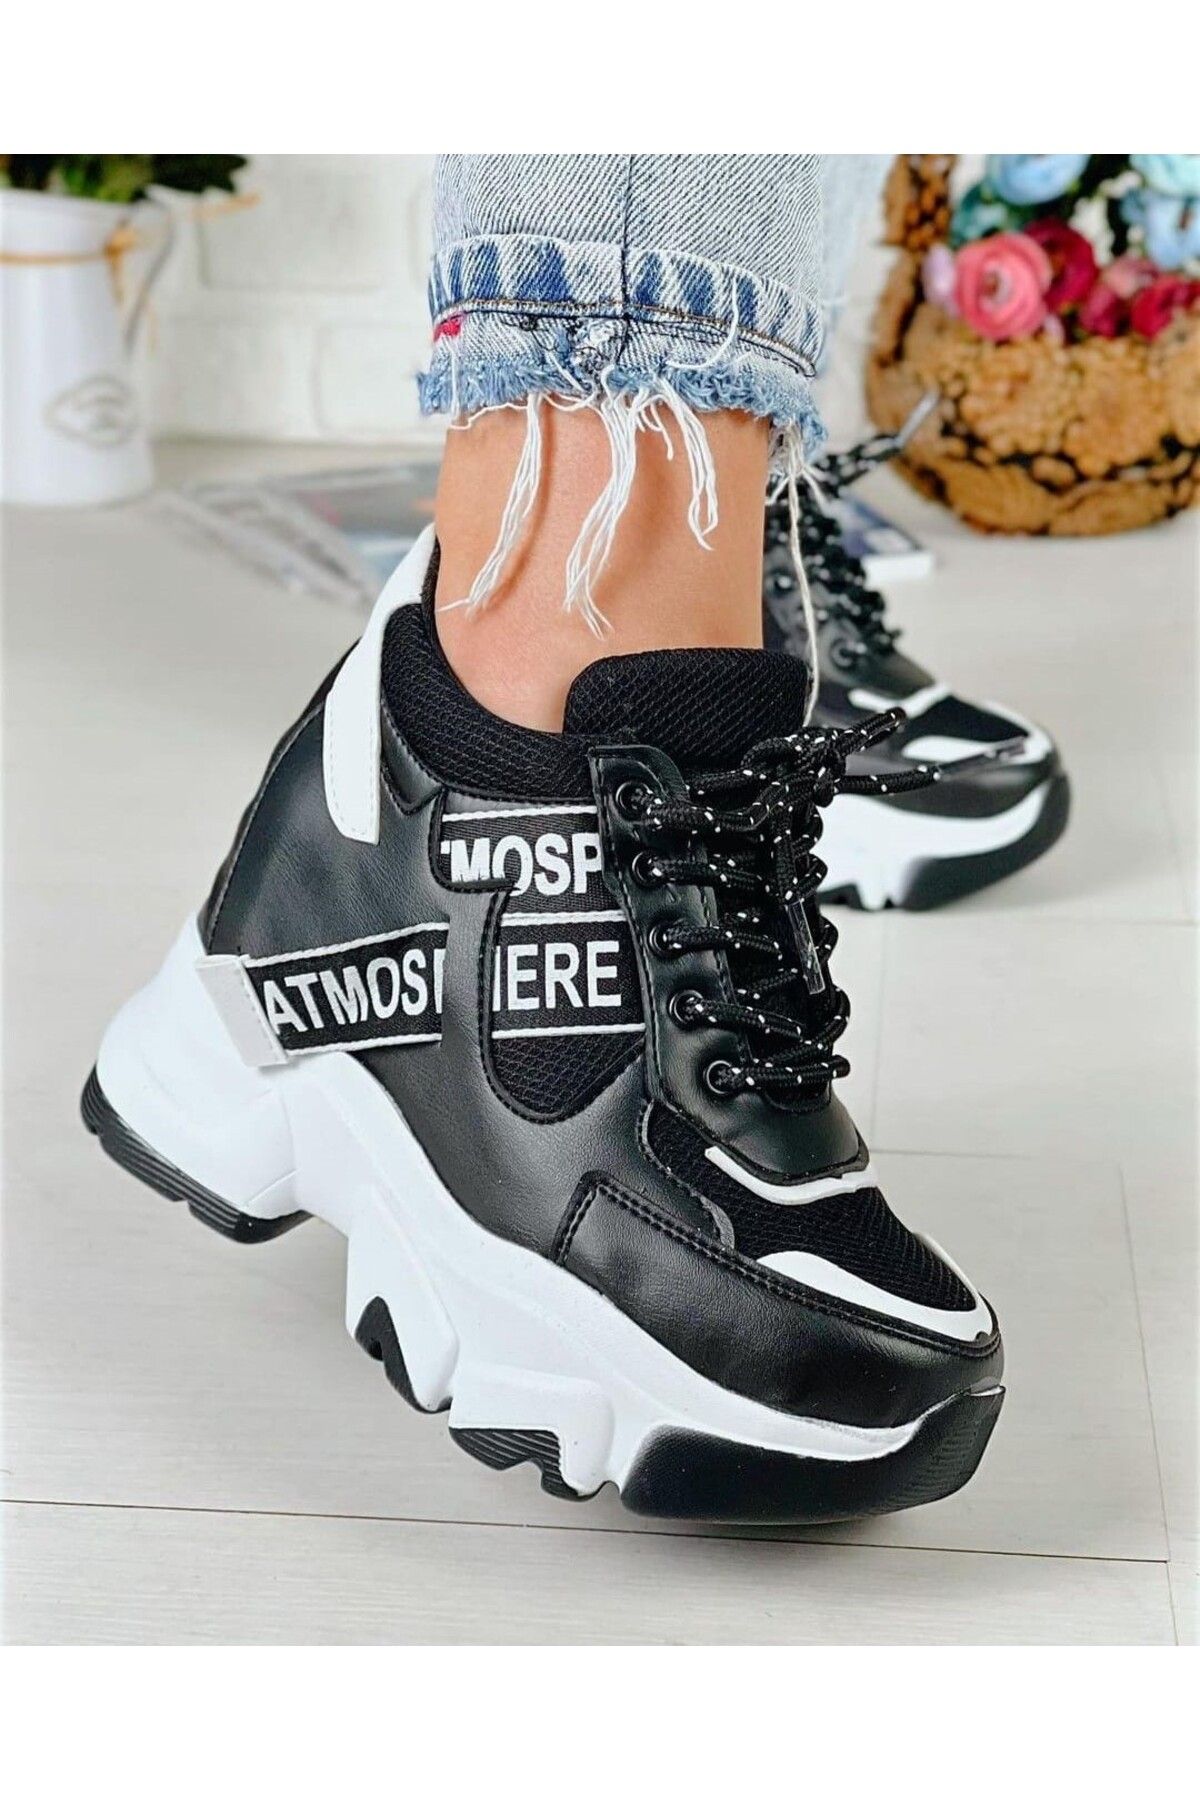 Afilli Kadın Siyah Beyaz Gizli Yüksek Taban Dolgu Platform Topuk Günlük Parlak Sneaker Spor Ayakkabı